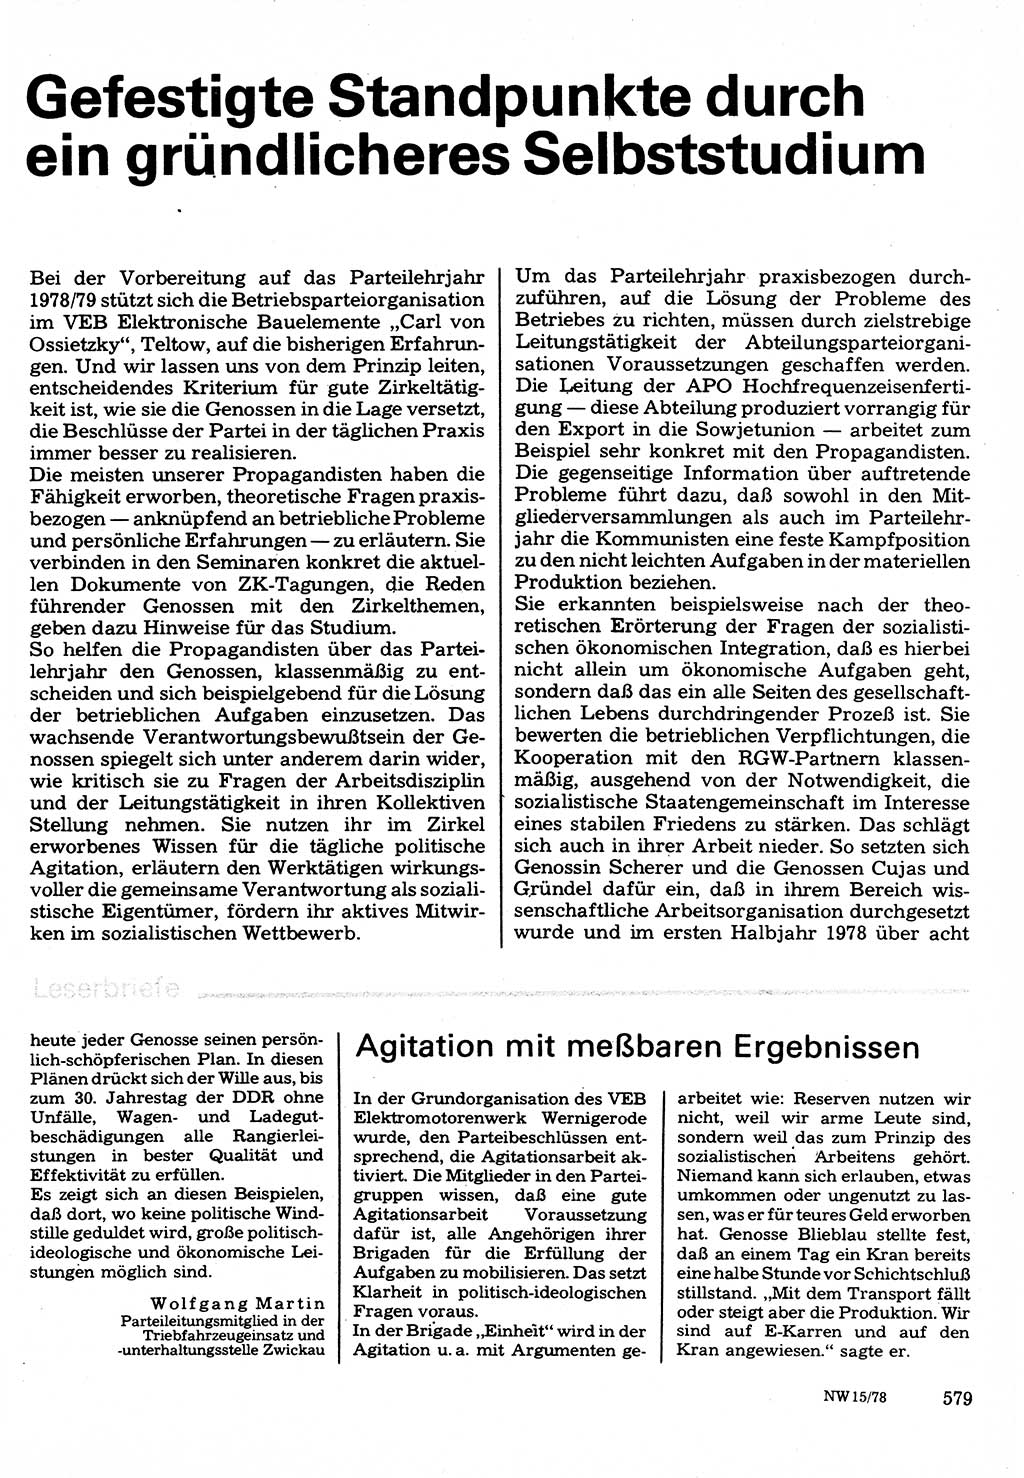 Neuer Weg (NW), Organ des Zentralkomitees (ZK) der SED (Sozialistische Einheitspartei Deutschlands) für Fragen des Parteilebens, 33. Jahrgang [Deutsche Demokratische Republik (DDR)] 1978, Seite 579 (NW ZK SED DDR 1978, S. 579)